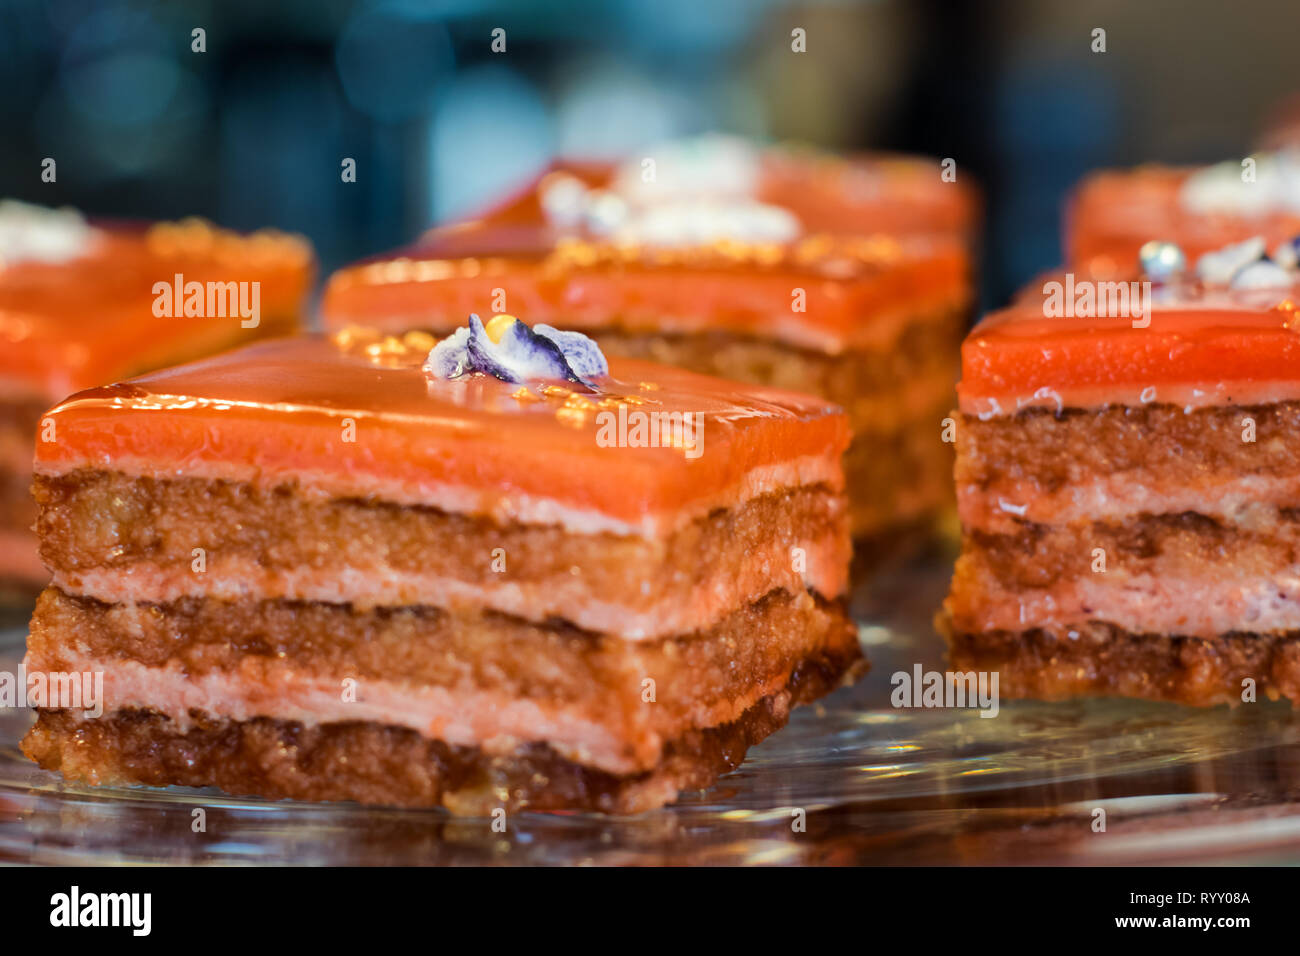 Kuchen, Kuchenstücke als Dessert - Süße Nachspeise Stock Photo